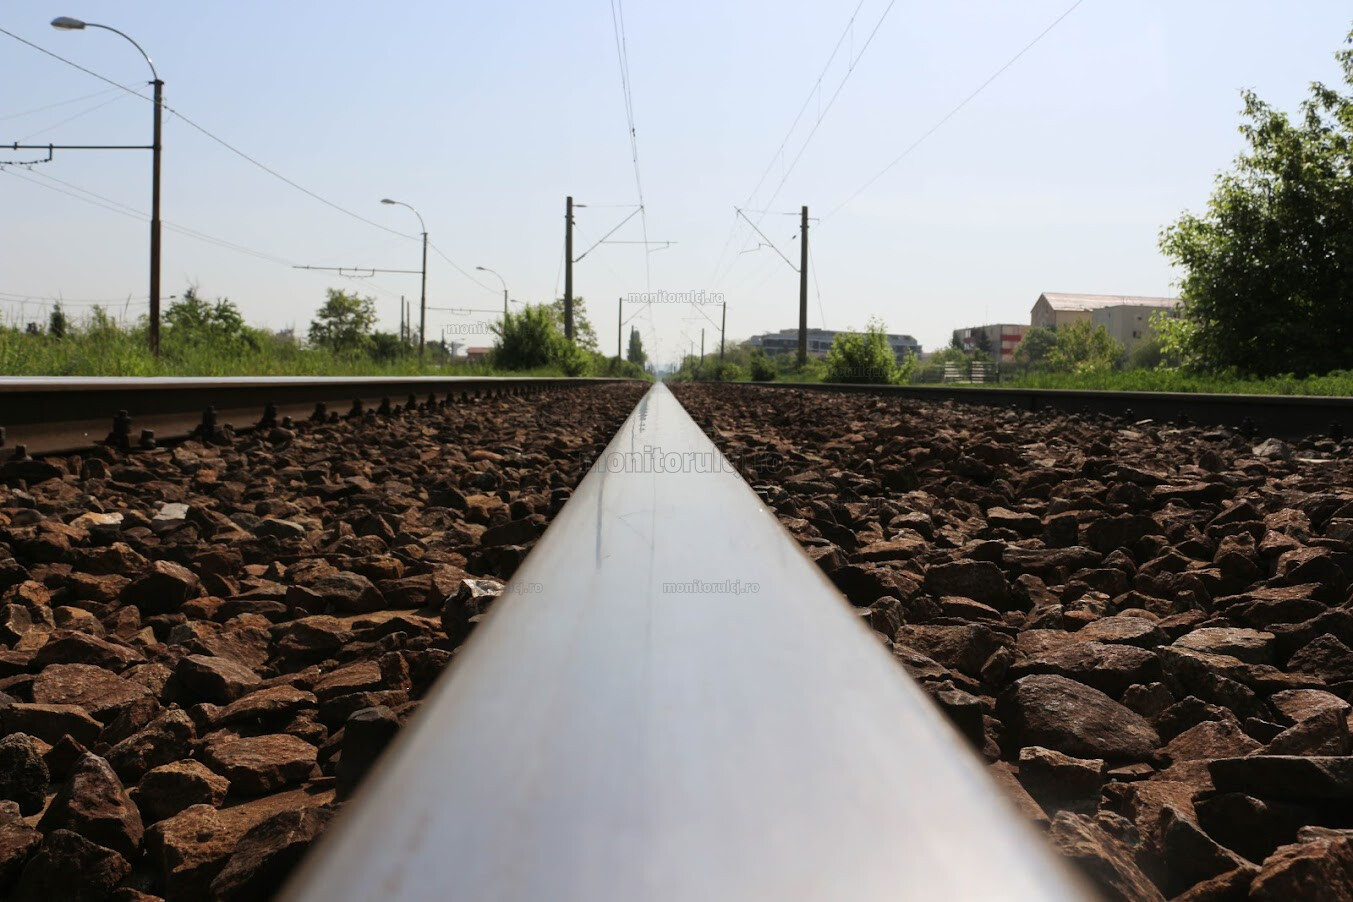 Primăria solicită aviz de mediu pentru trenul metropolitan Cluj. Trenul va parcurge o distanță de 48,8 km și va avea stații noi de îmbarcare|Foto: monitorulcj.ro